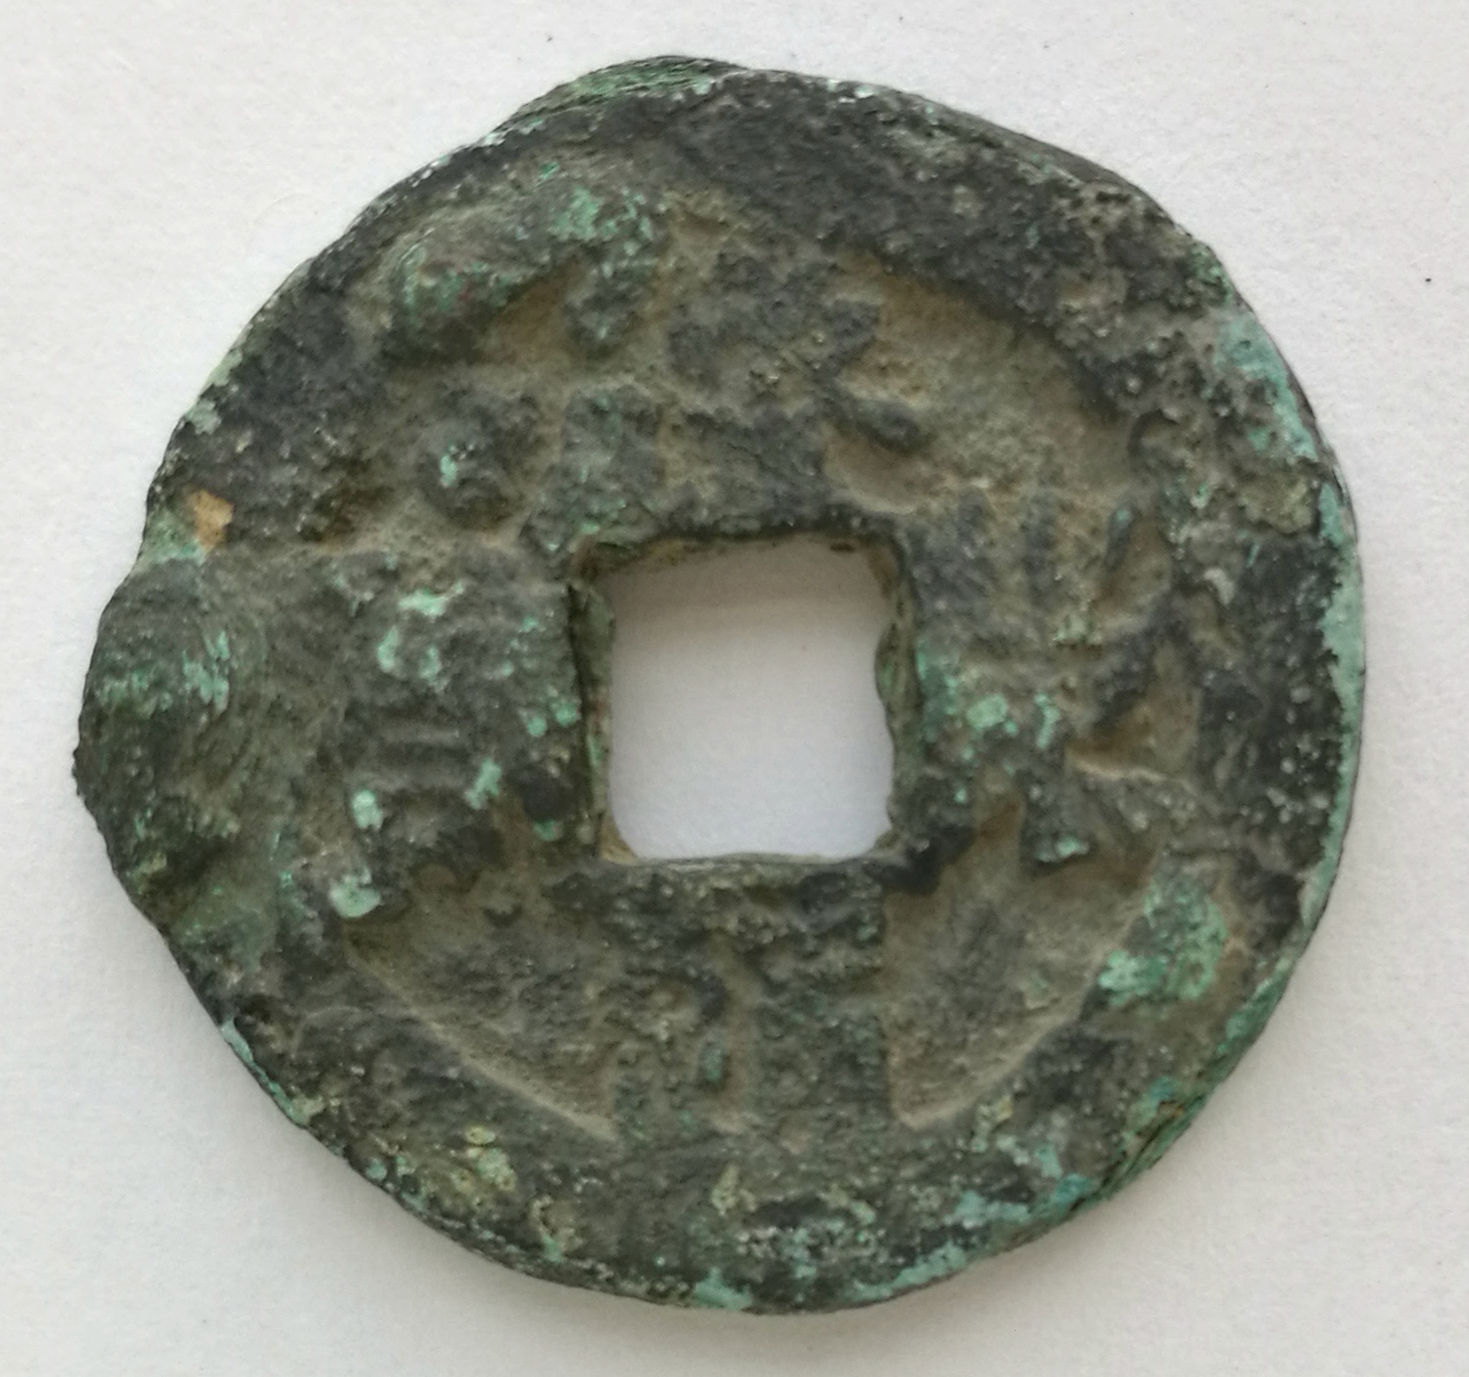 L2165, Korea "Hae-Tung Tong-Bao" Ancient Coin, Seal Script (b), AD 1102